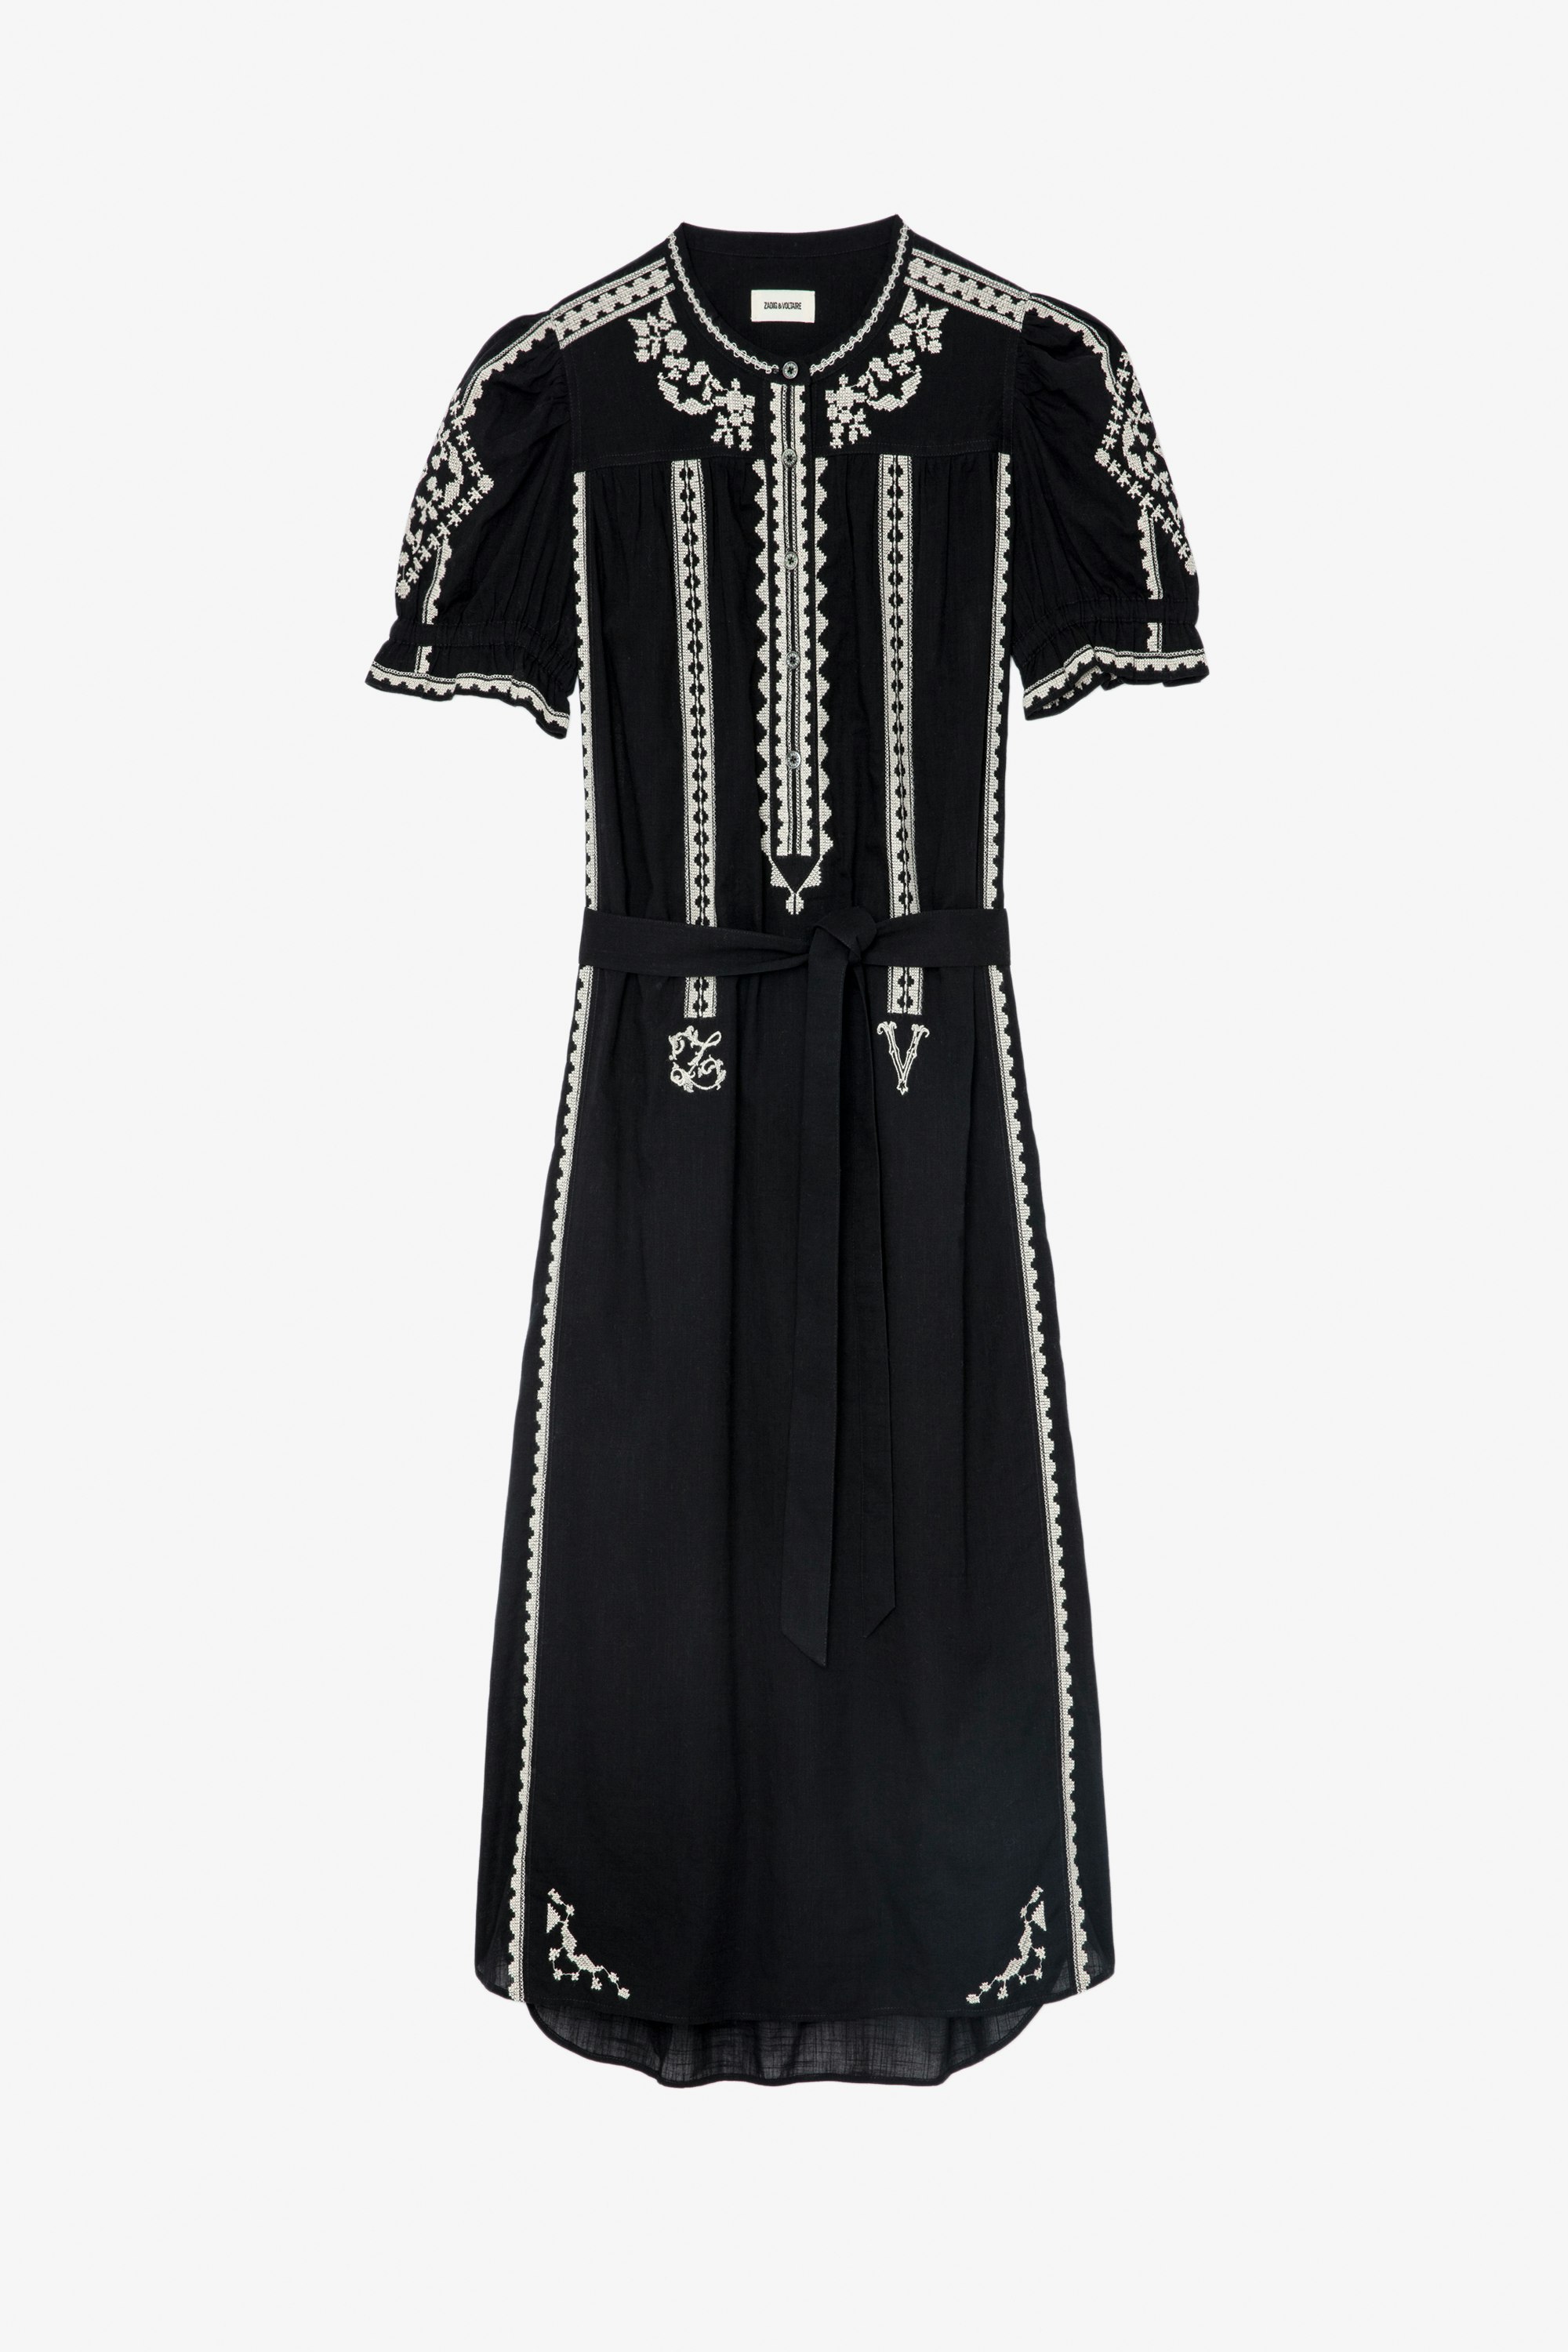 Vestido Rigy Vestido largo de algodón color negro con bordados, mangas tipo globo y atado a la cintura Mujer